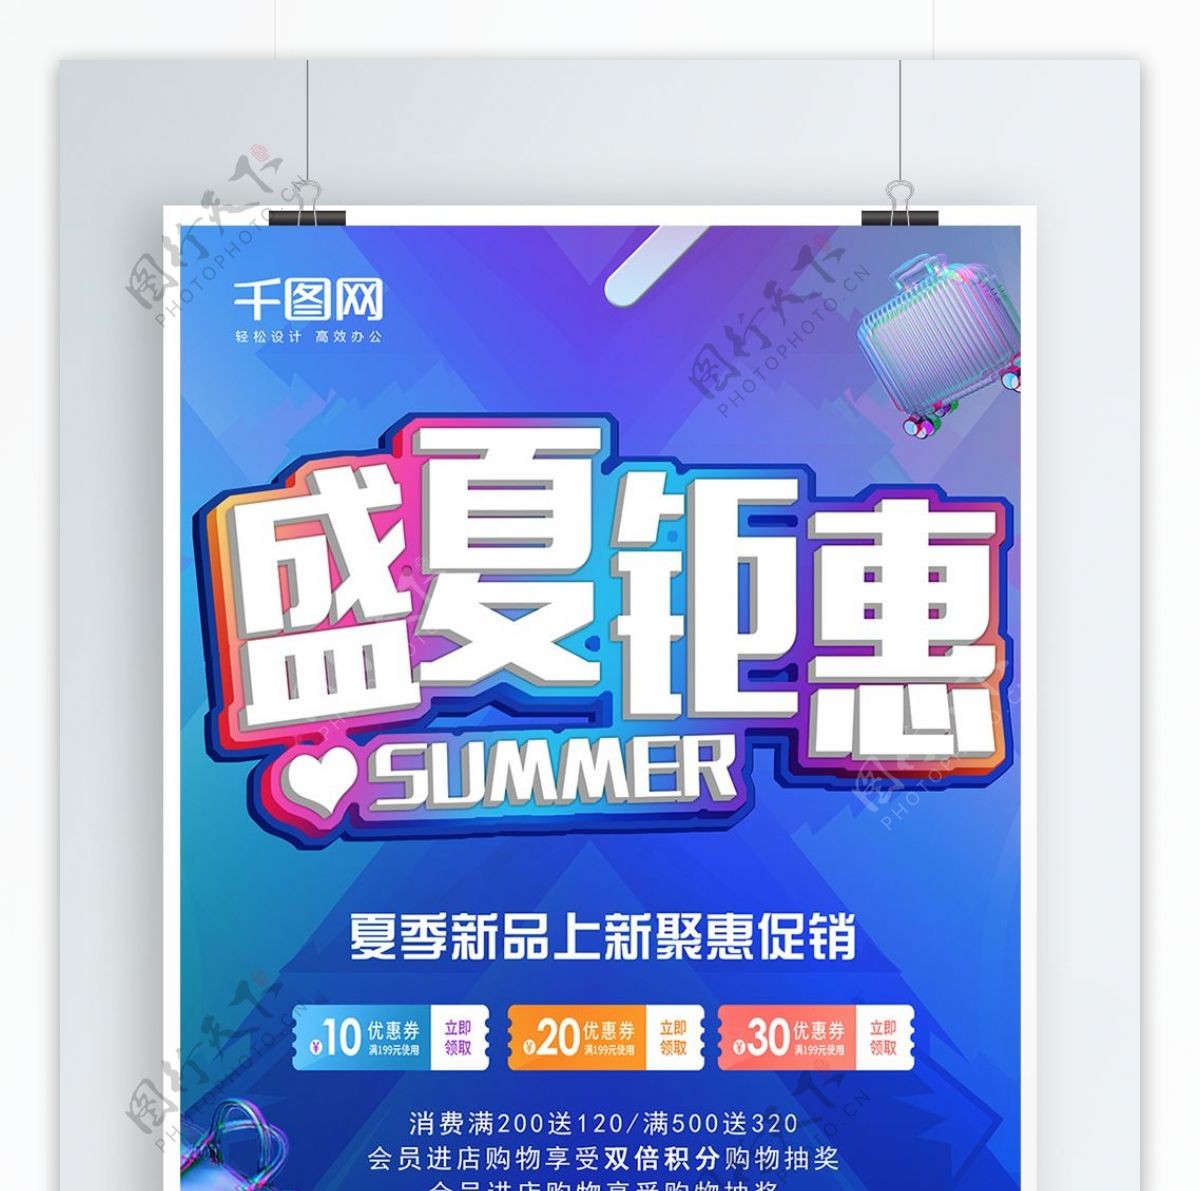 蓝色炫彩夏季尚新钜惠盛夏促销海报